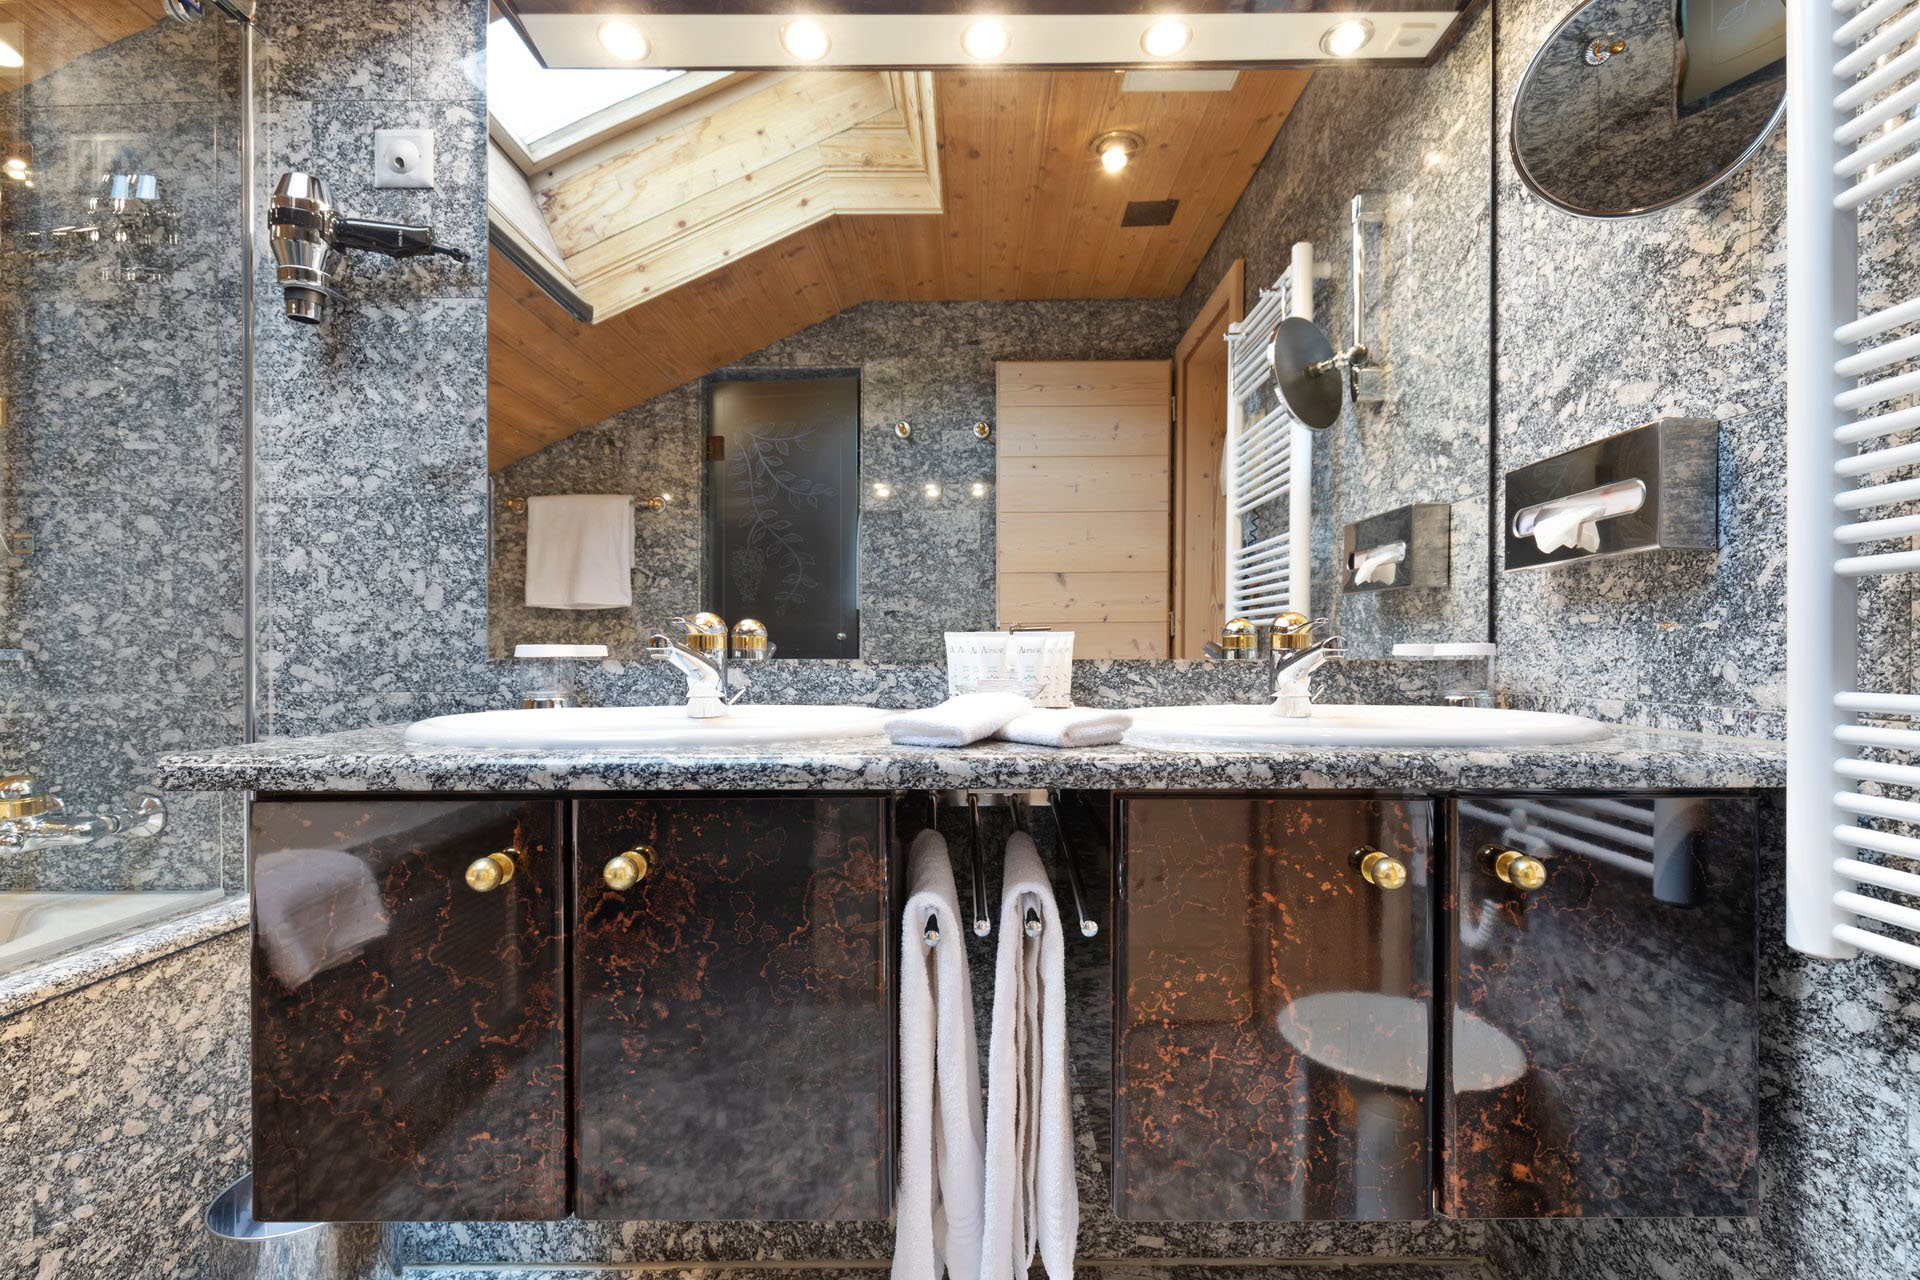 Chalet Suite Matterhorn Bathroom Basins - Grand Hotel Zermatterhof